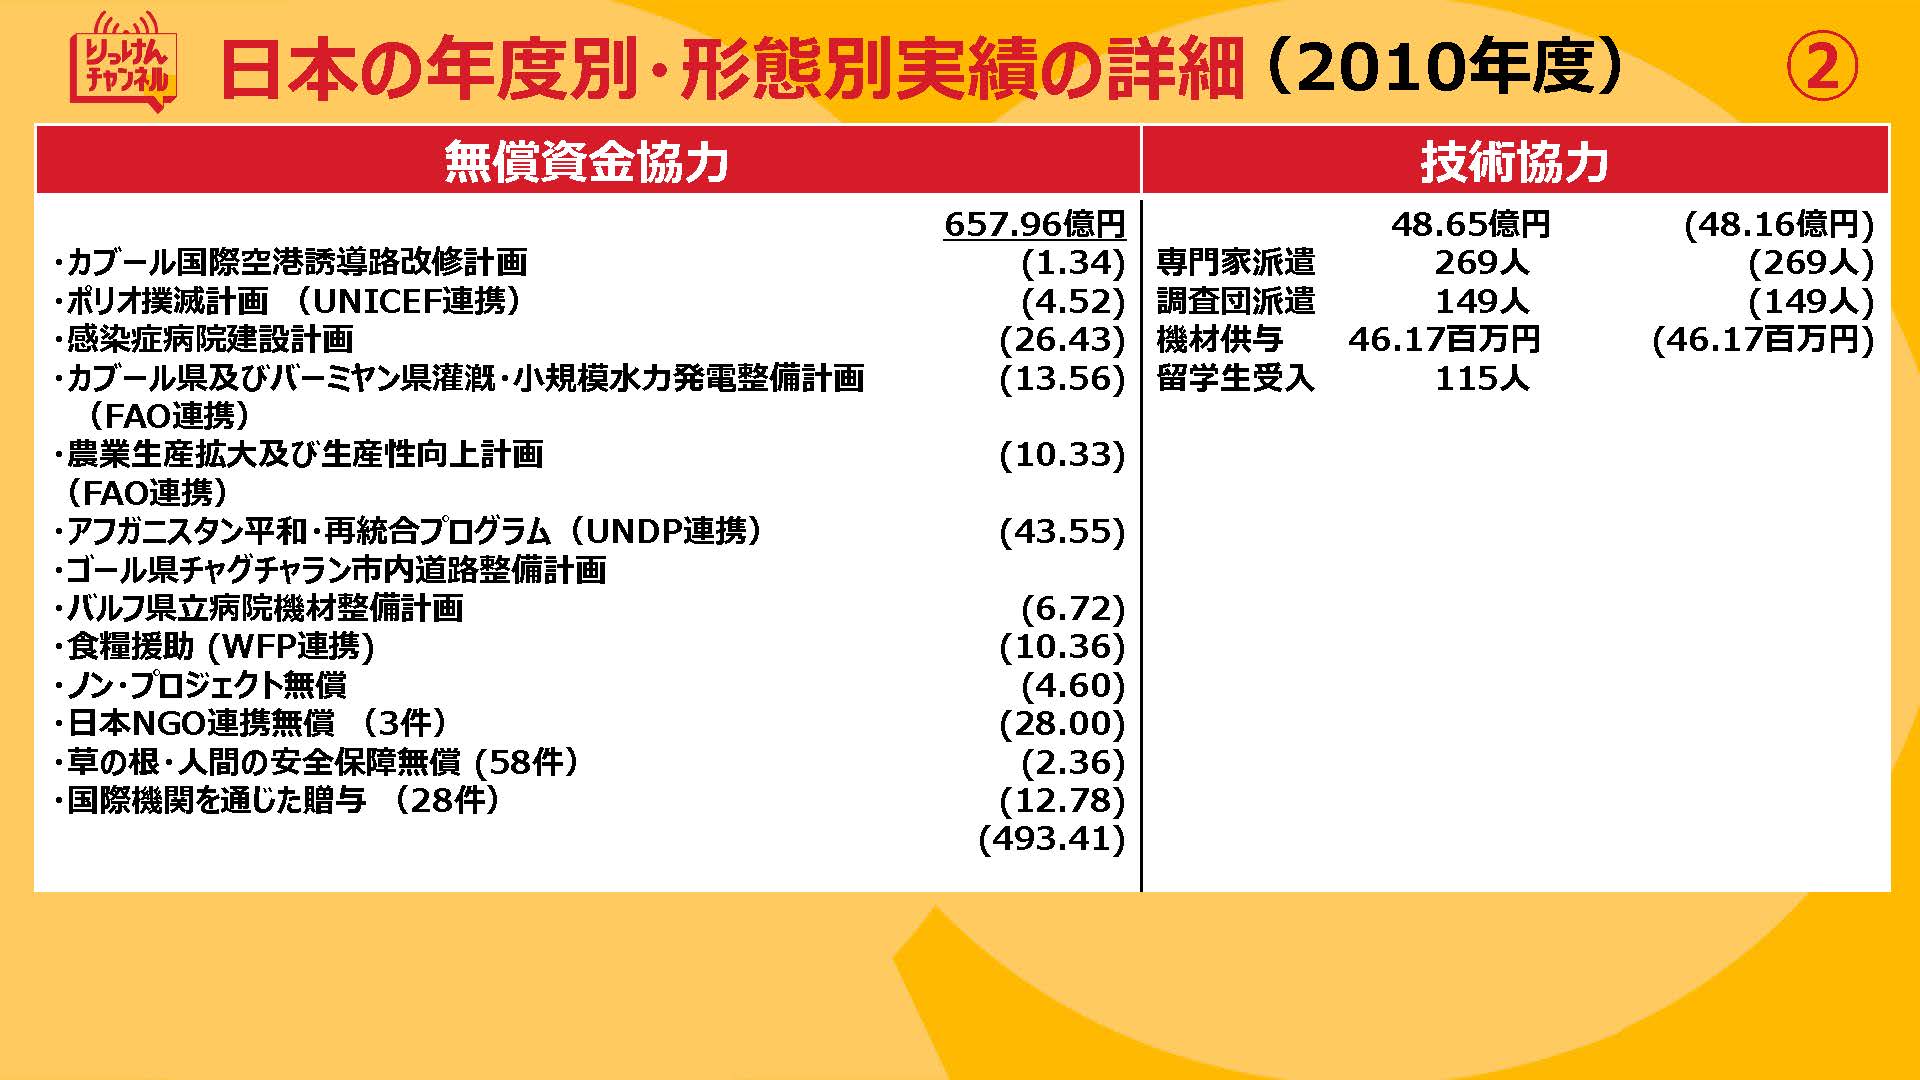 20210924_日本の年度別・形態別実績の詳細（2009~2012)_ページ_2.jpg